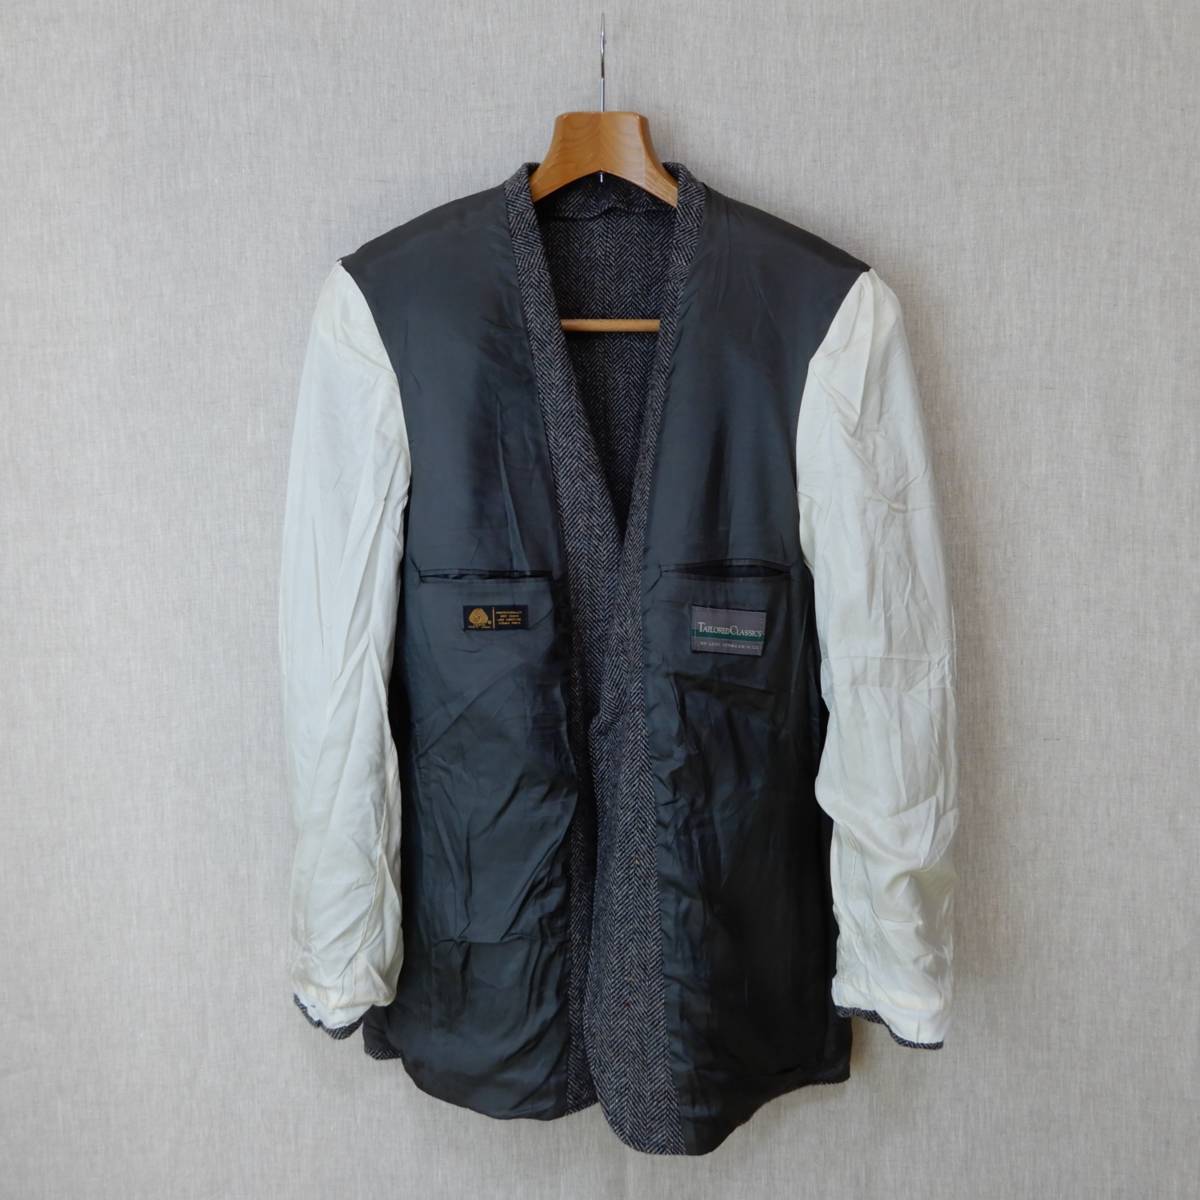 Levi´s TAILORED CLASSICS Wool Tweed Jacket 1980s 41L Vintage